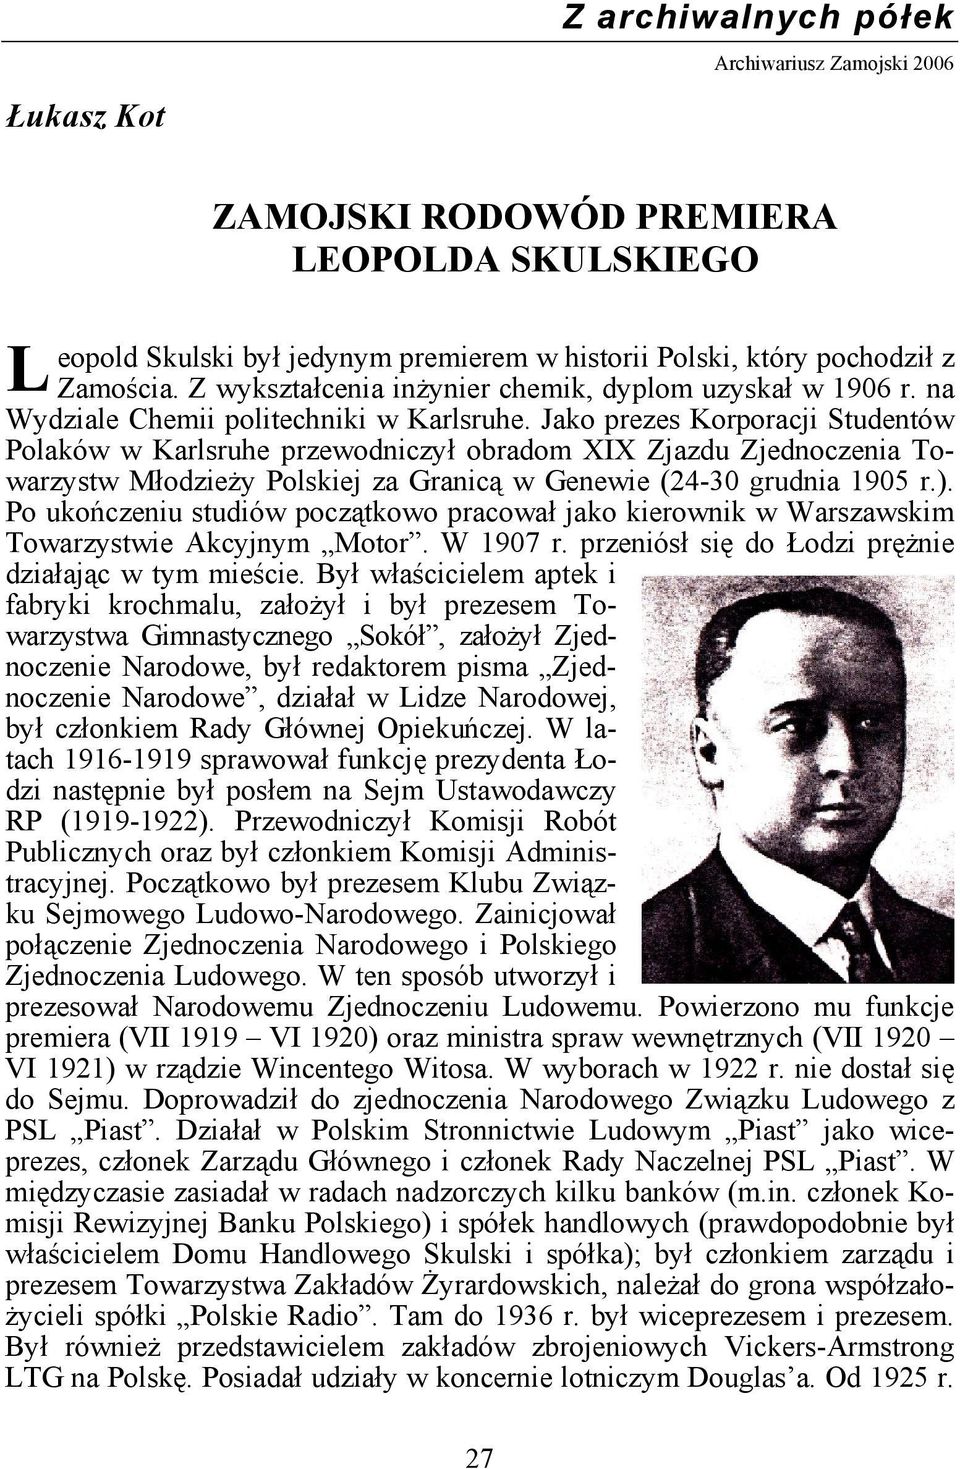 Jako prezes Korporacji Studentów Polaków w Karlsruhe przewodniczył obradom XIX Zjazdu Zjednoczenia Towarzystw Młodzieży Polskiej za Granicą w Genewie (24-30 grudnia 1905 r.).